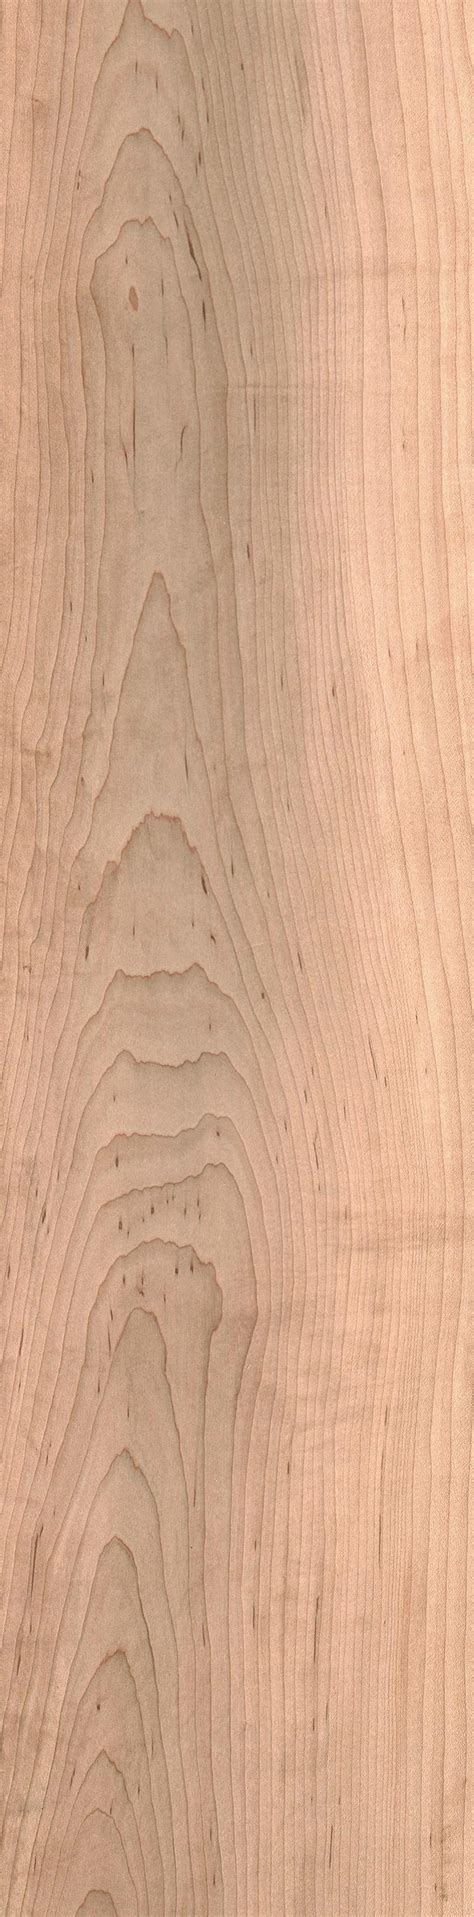 Hard Maple The Wood Database Lumber Identification Hardwood